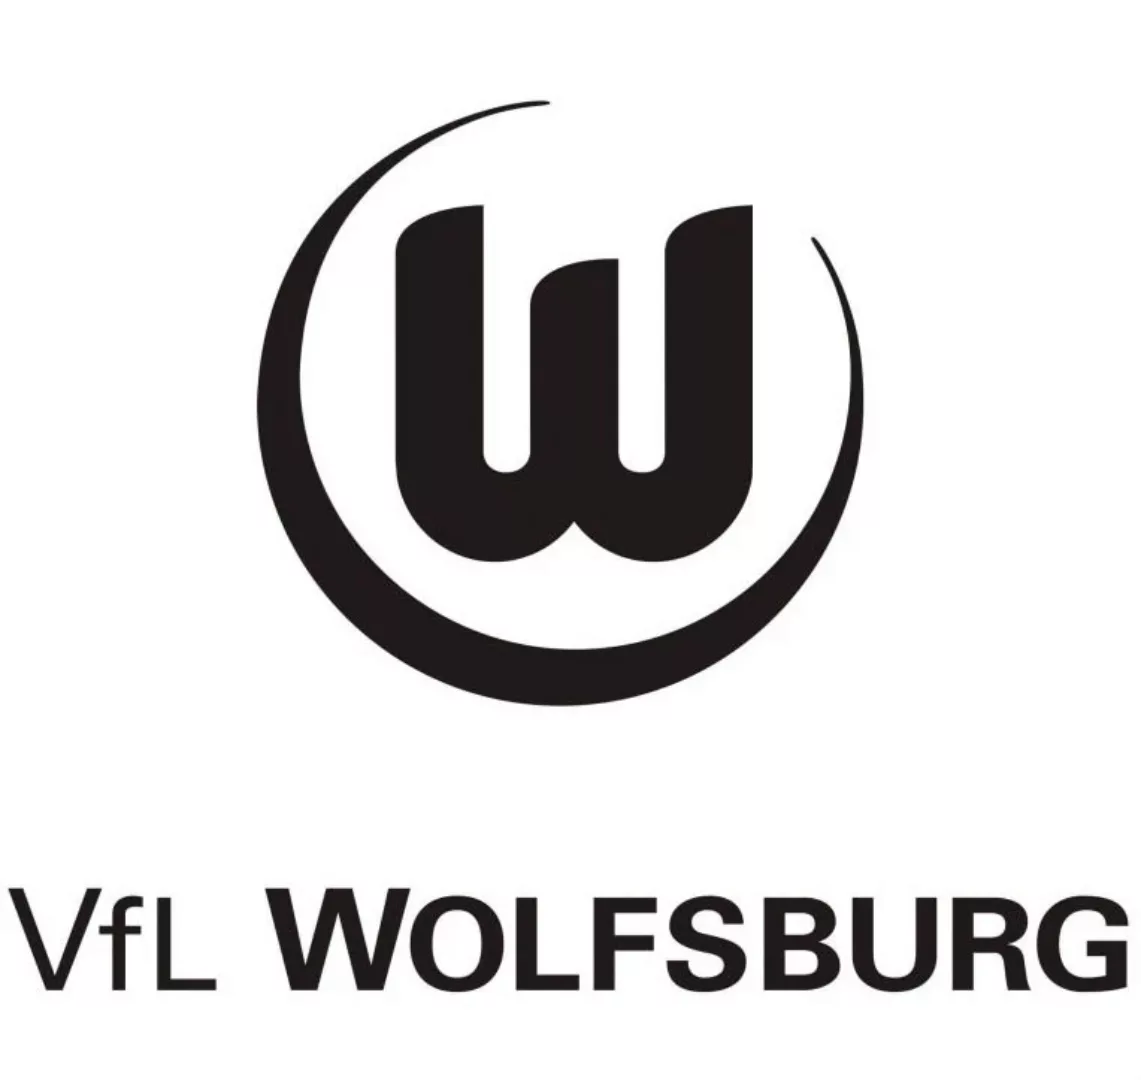 Wall-Art Wandtattoo "Fußball VfL Wolfsburg Logo" günstig online kaufen